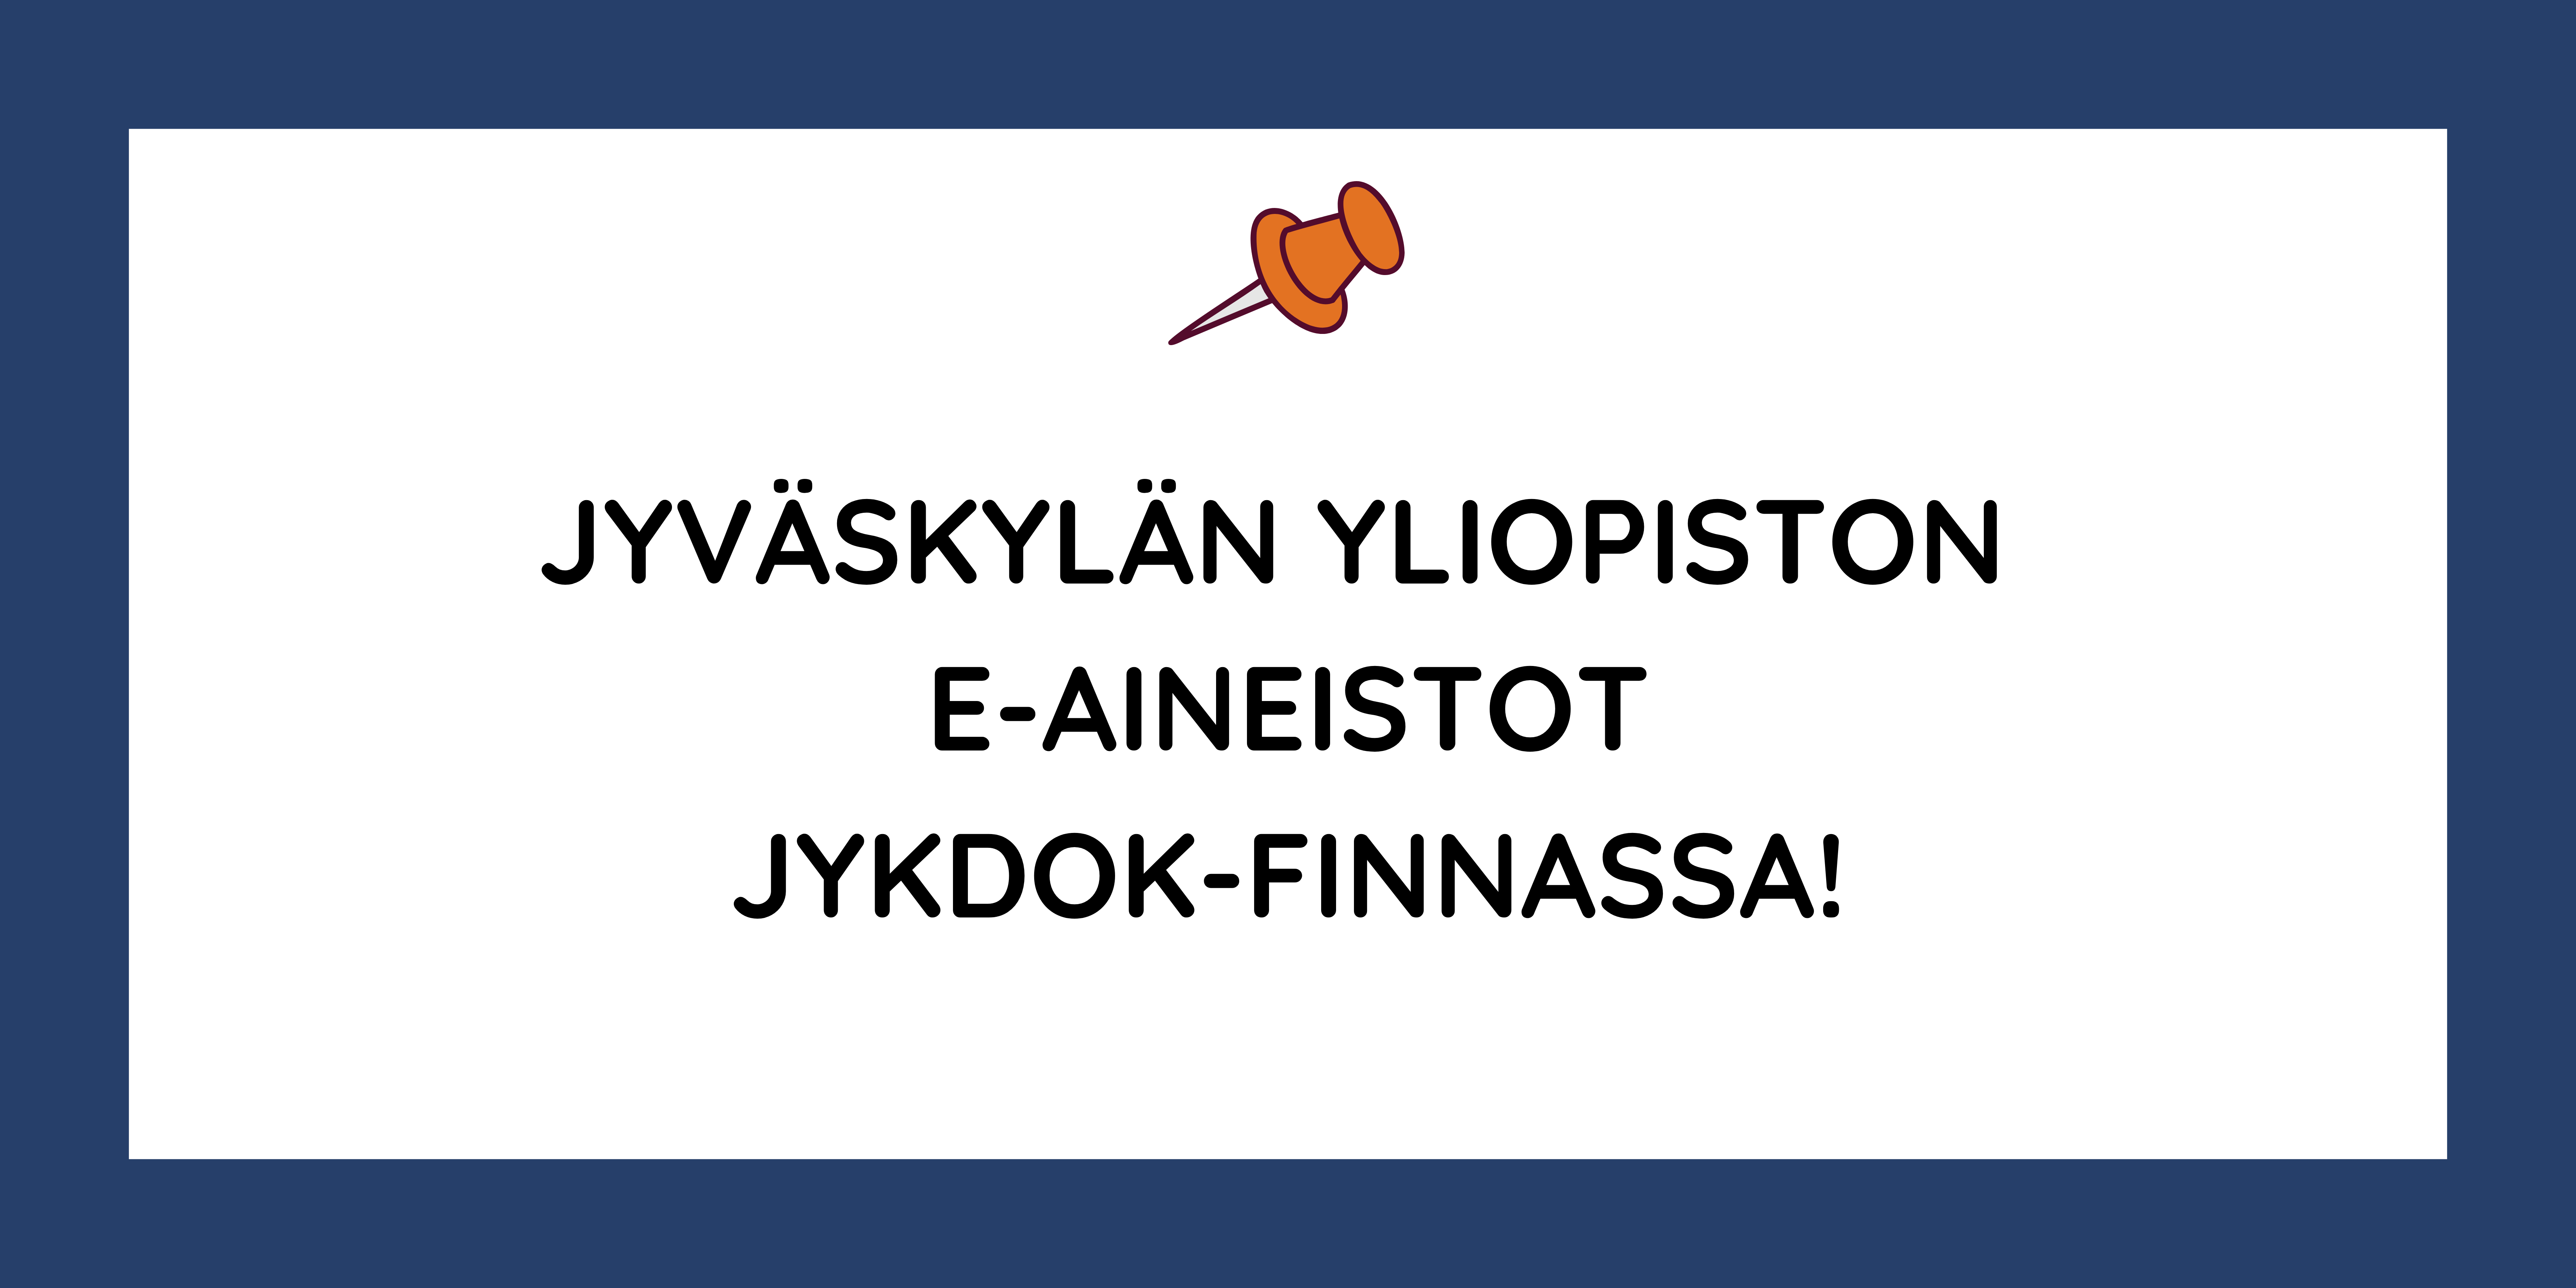 Linkki Jyväskylän yliopiston finnaan